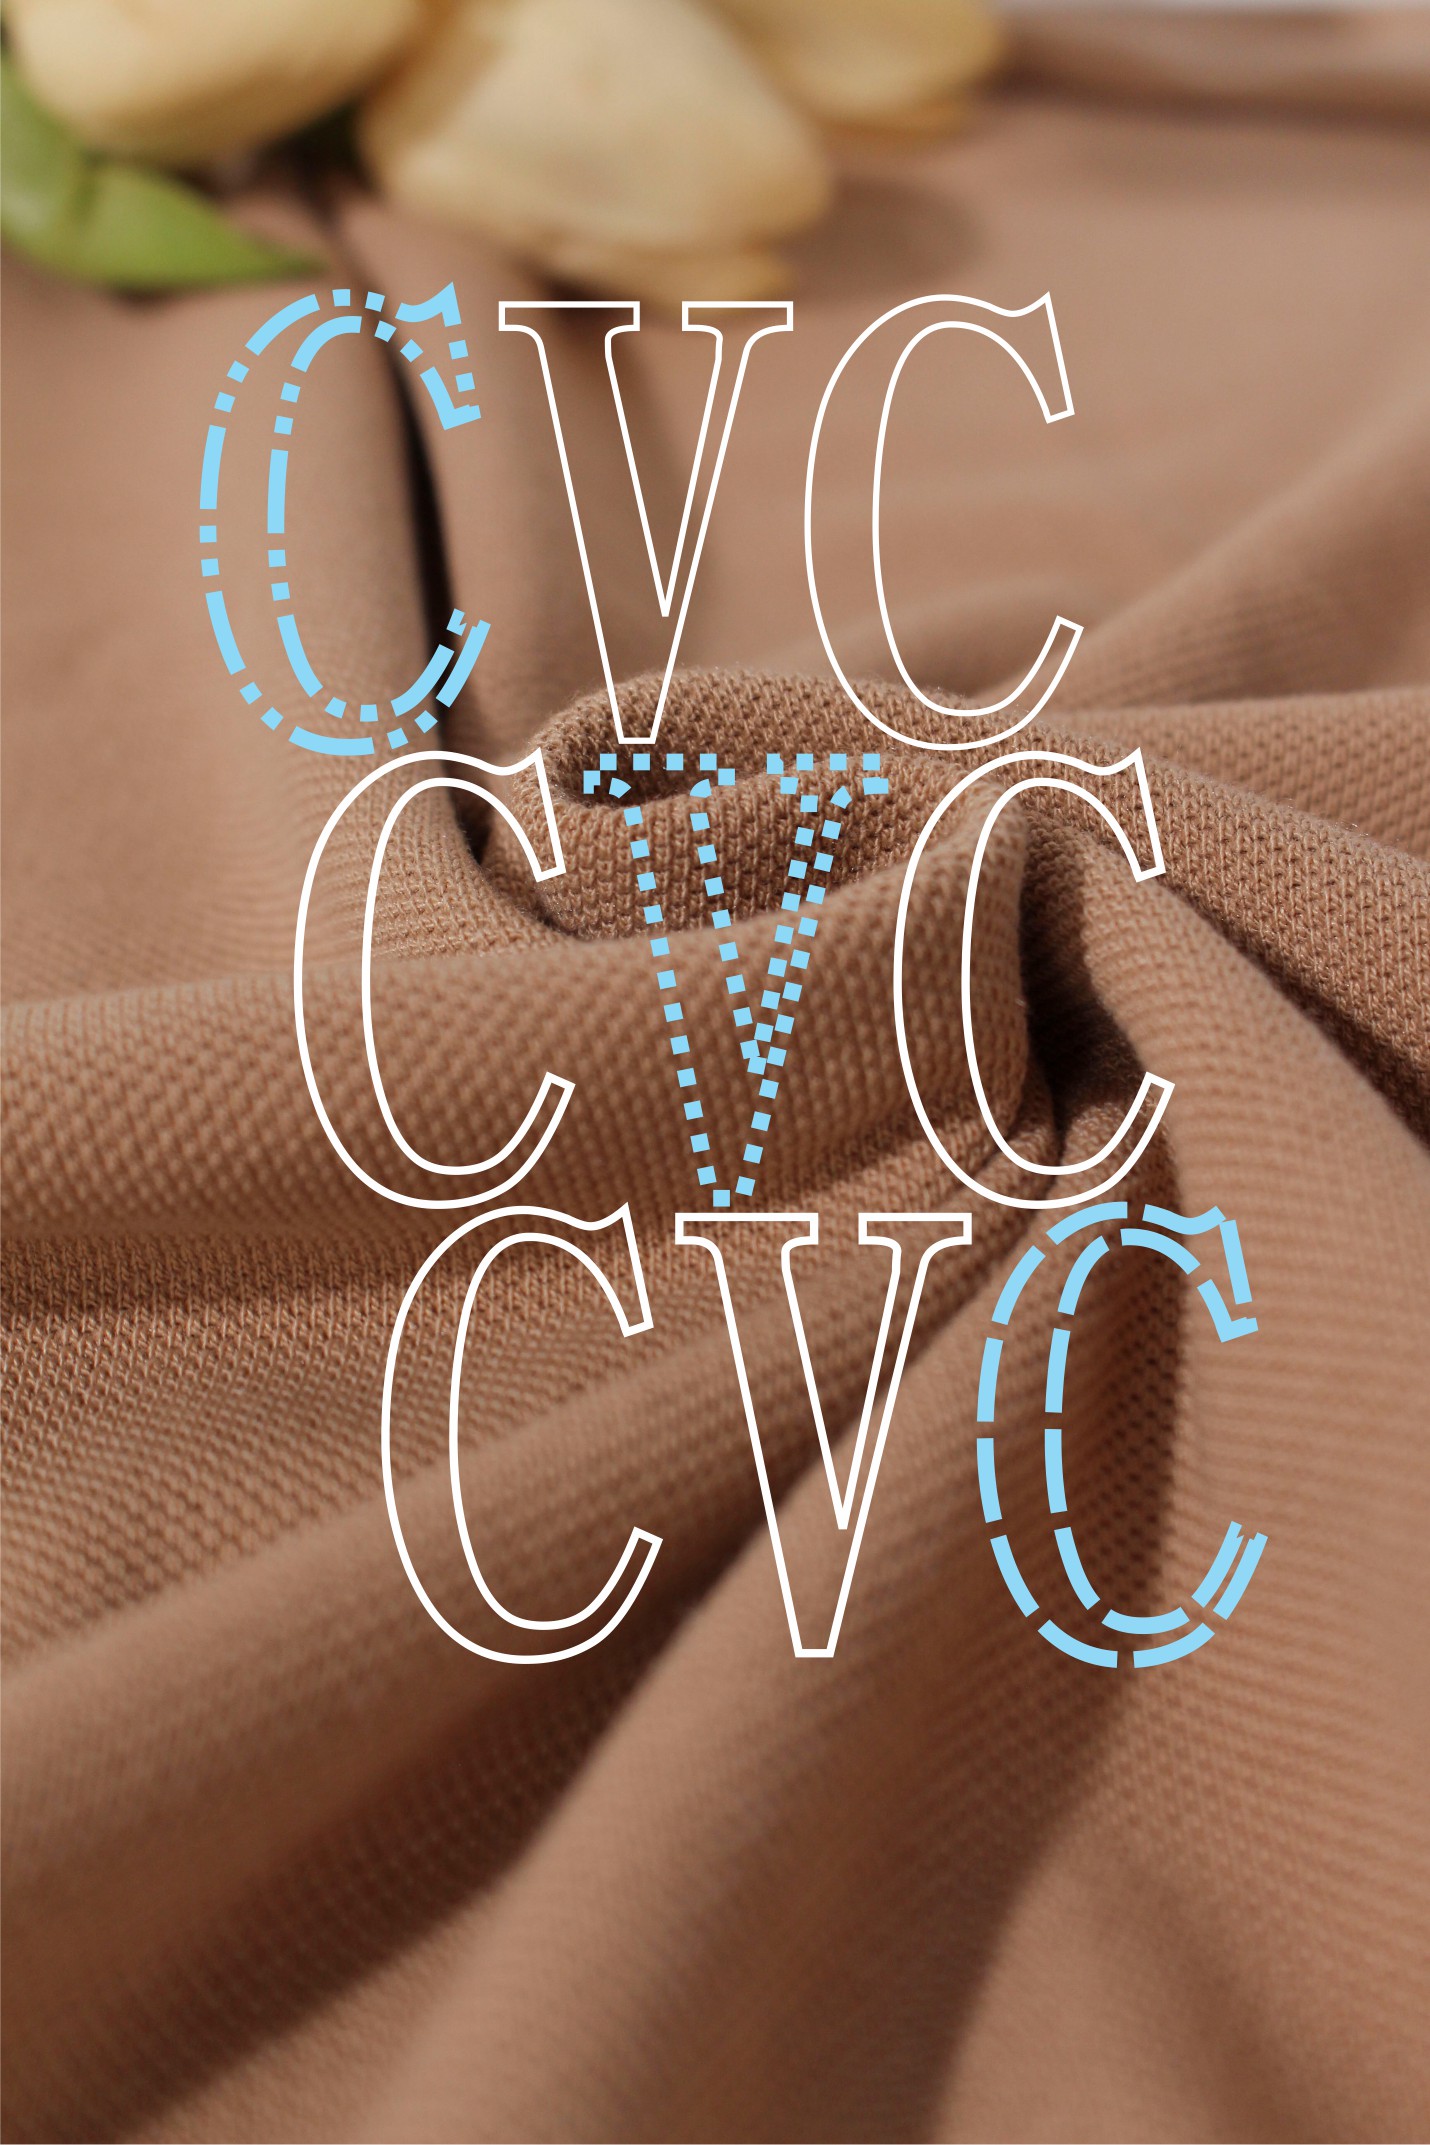 Vải CVC là gì? Ưu điểm và ứng dụng của vải CVC